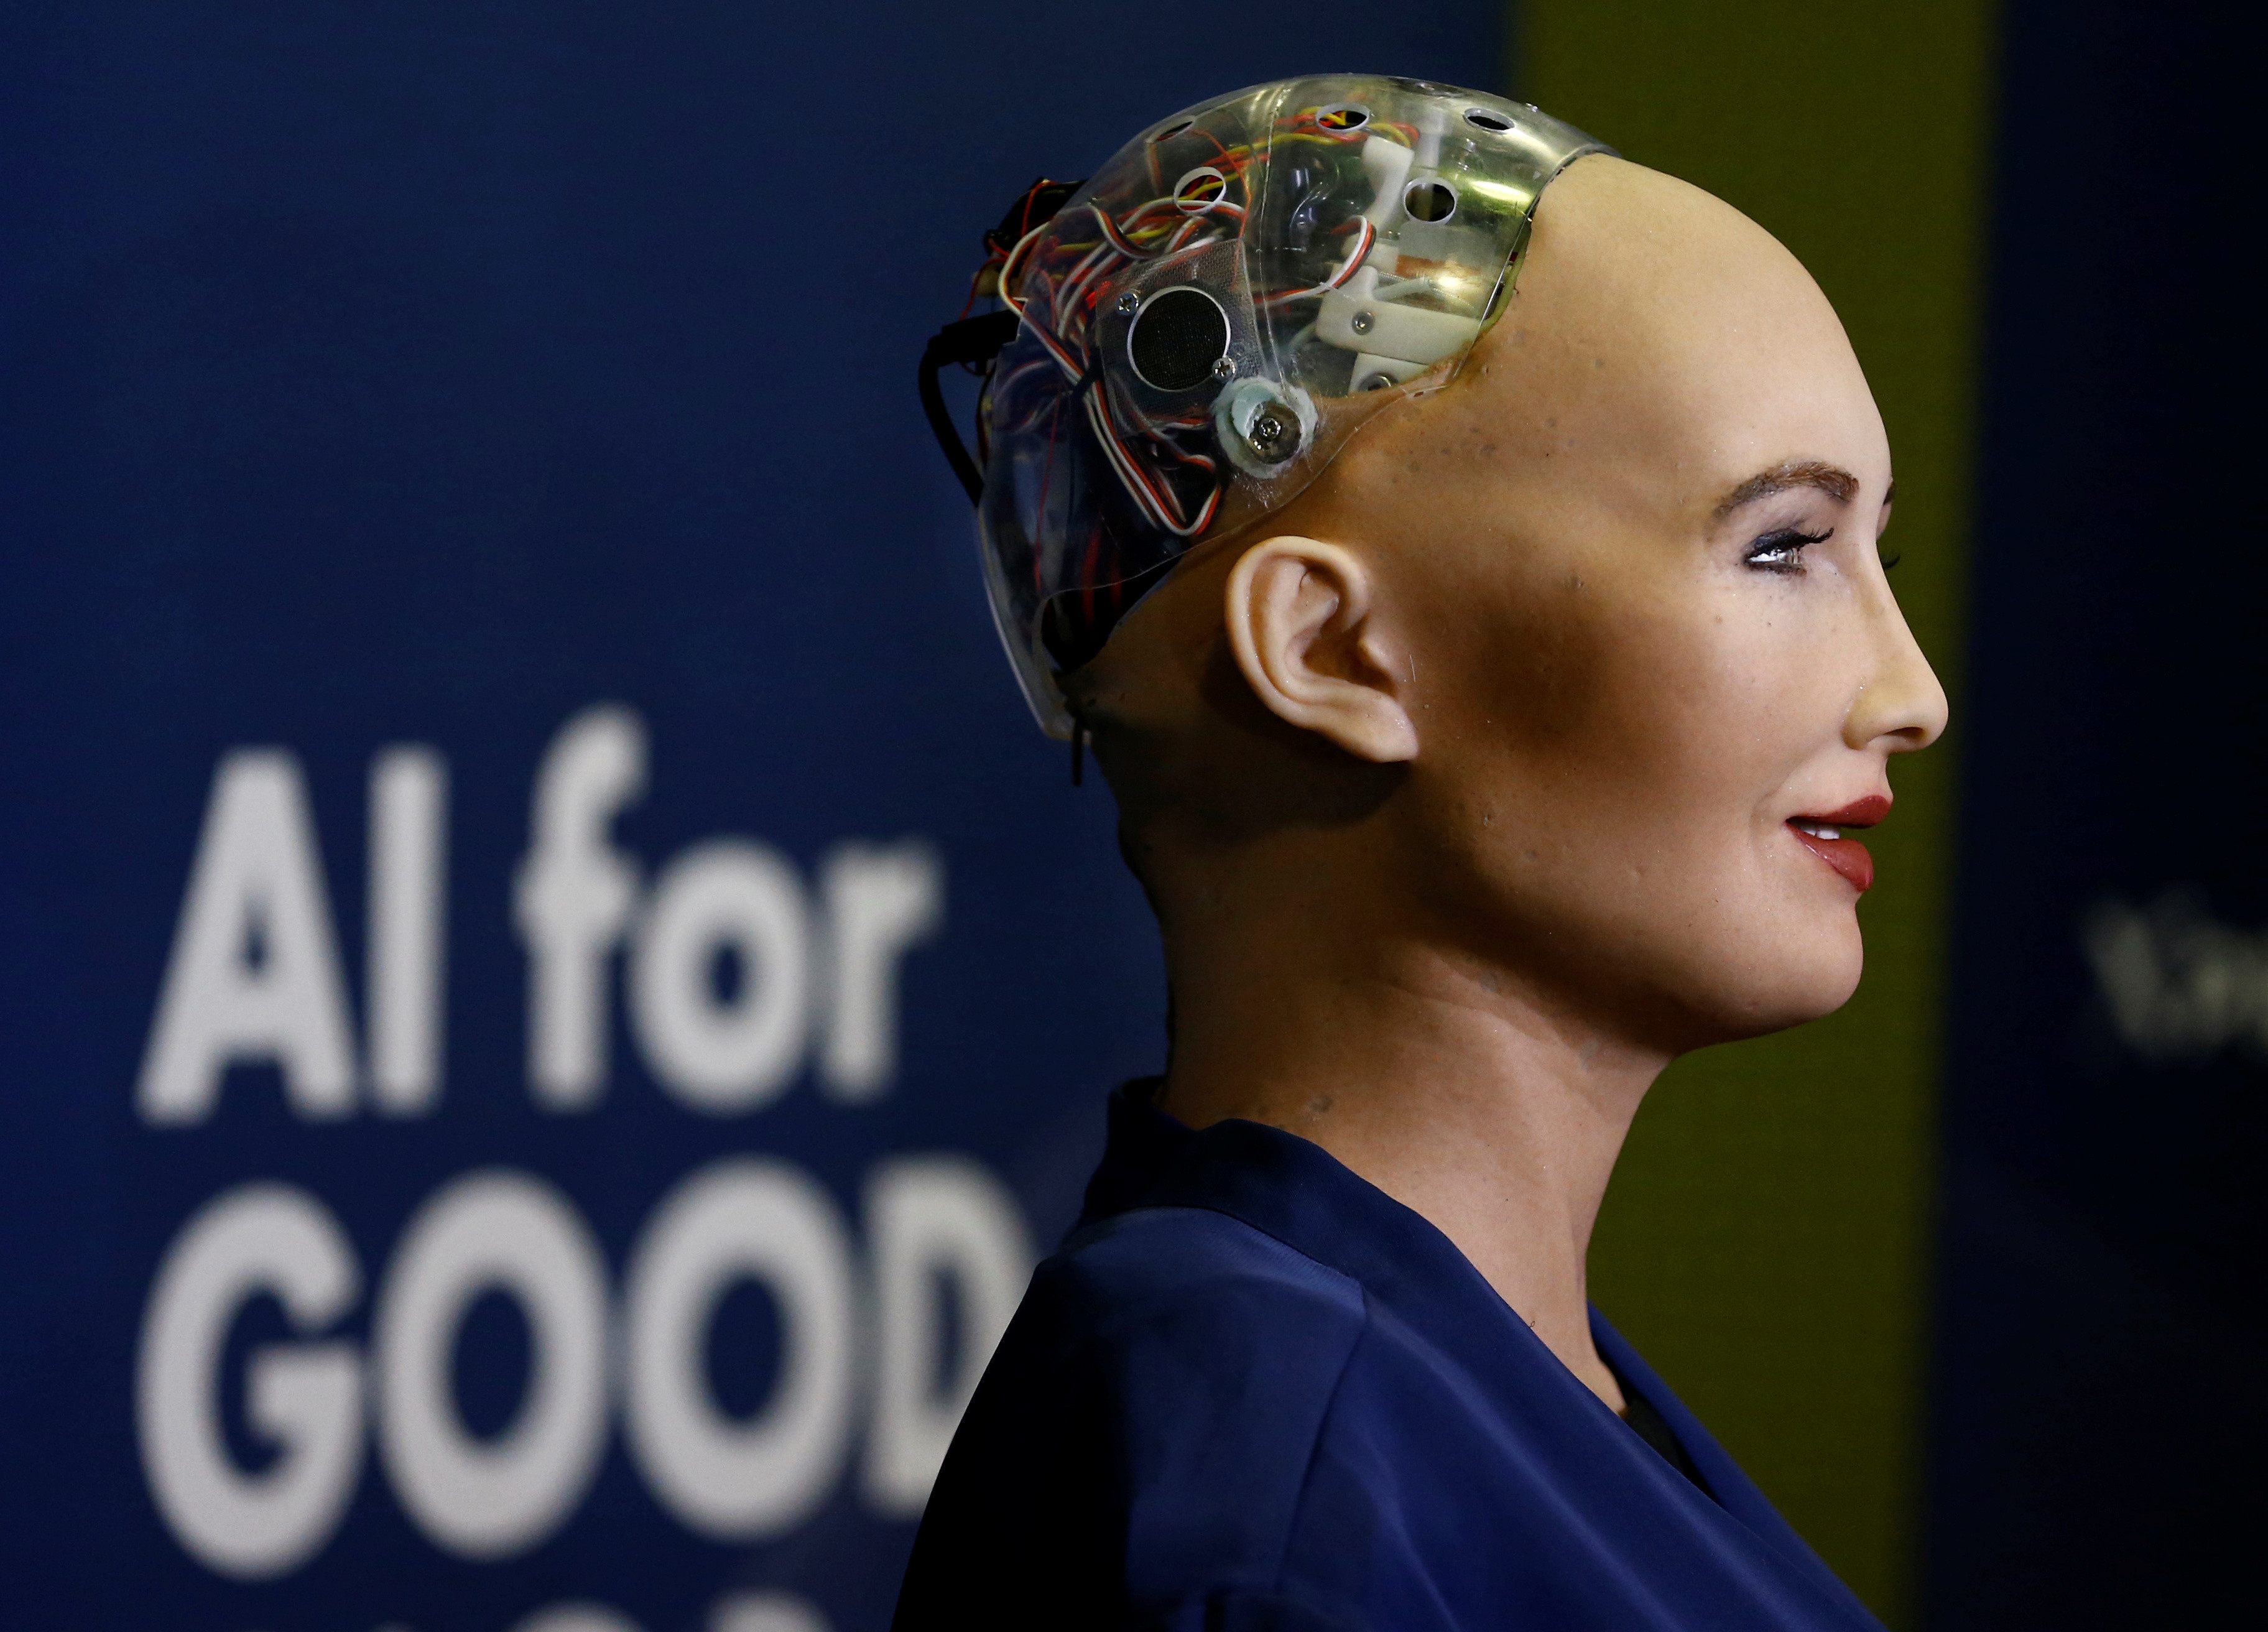 سوفیا، بهترین ربات جهان و چند کاری که هوش مصنوعی در انجامشان بهتر از انسان عمل میکند!